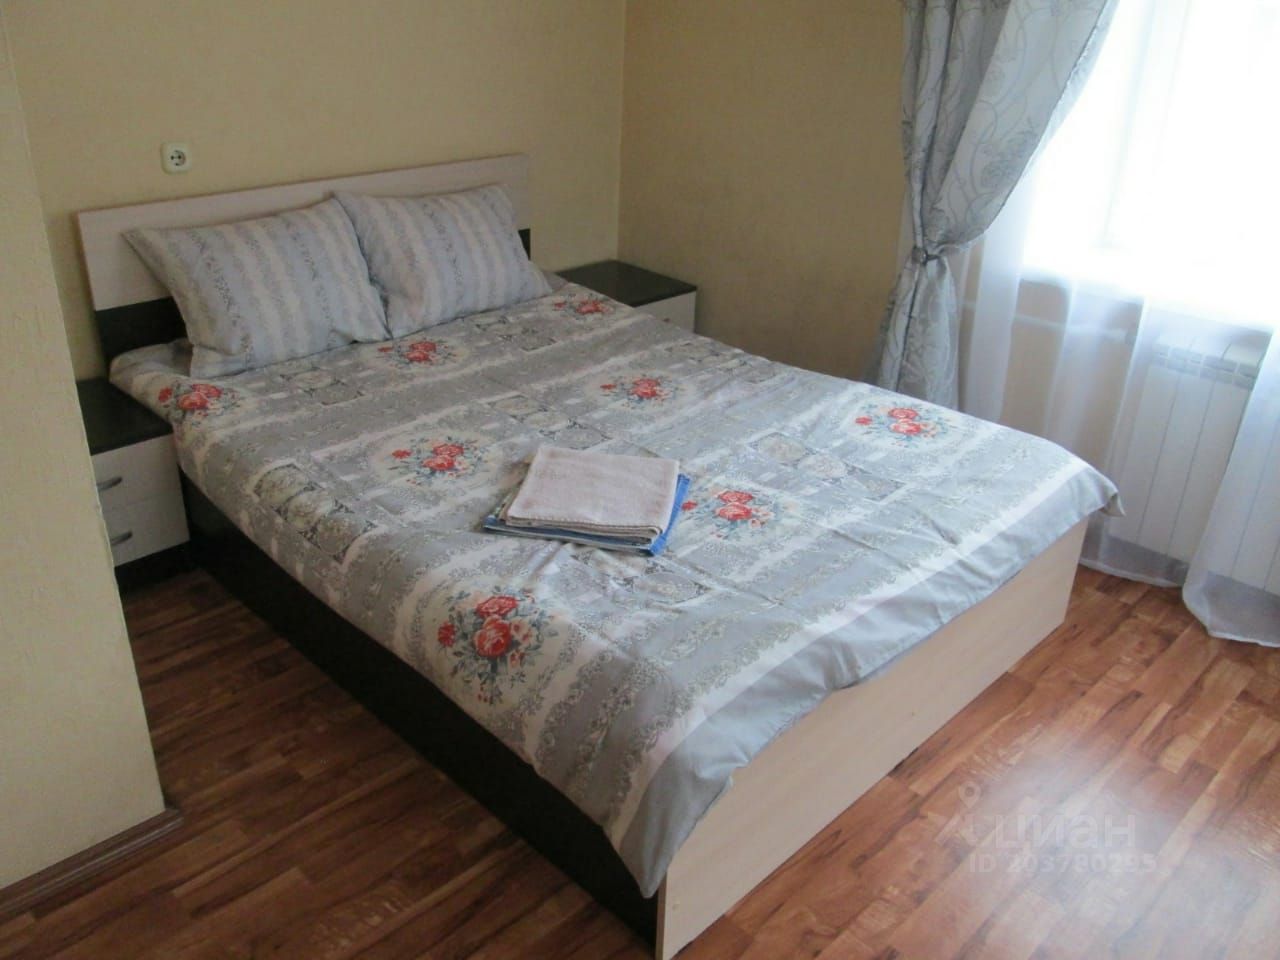 Уютная однокомнатная квартира в Екатеринбурге, посуточная аренда. Площадь 30.5 кв.м, 3 этаж, светлая спальня с двуспальной кроватью.